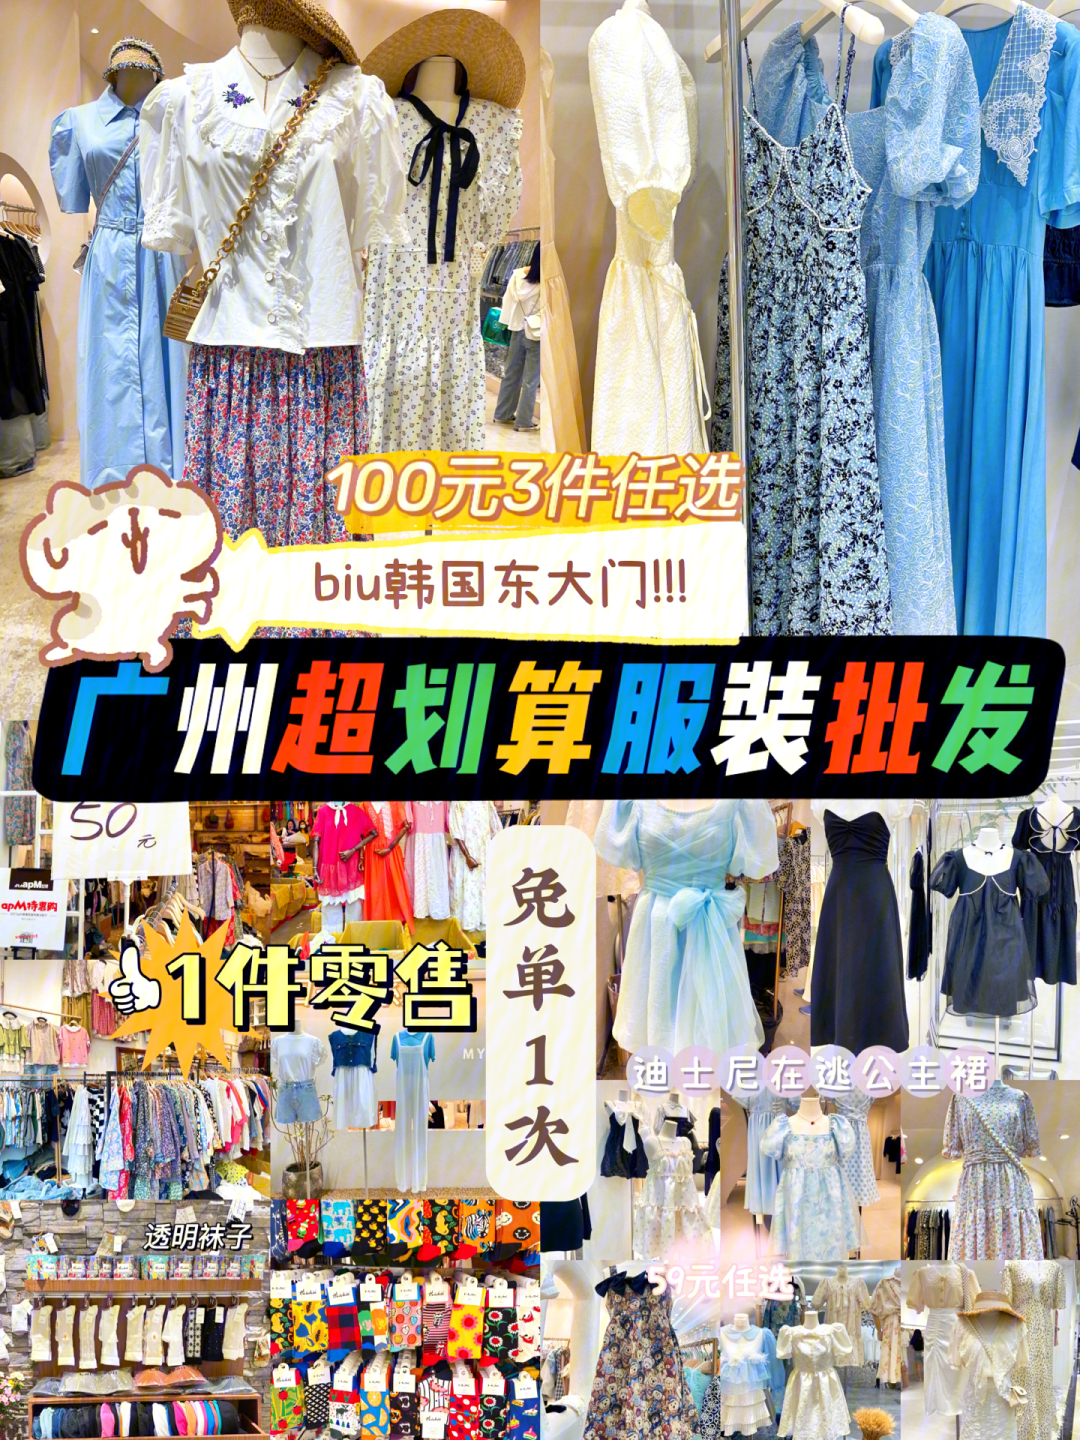 广州服装批发市场哪里最划算71—59元一件在逃公主!—100元3件任选!